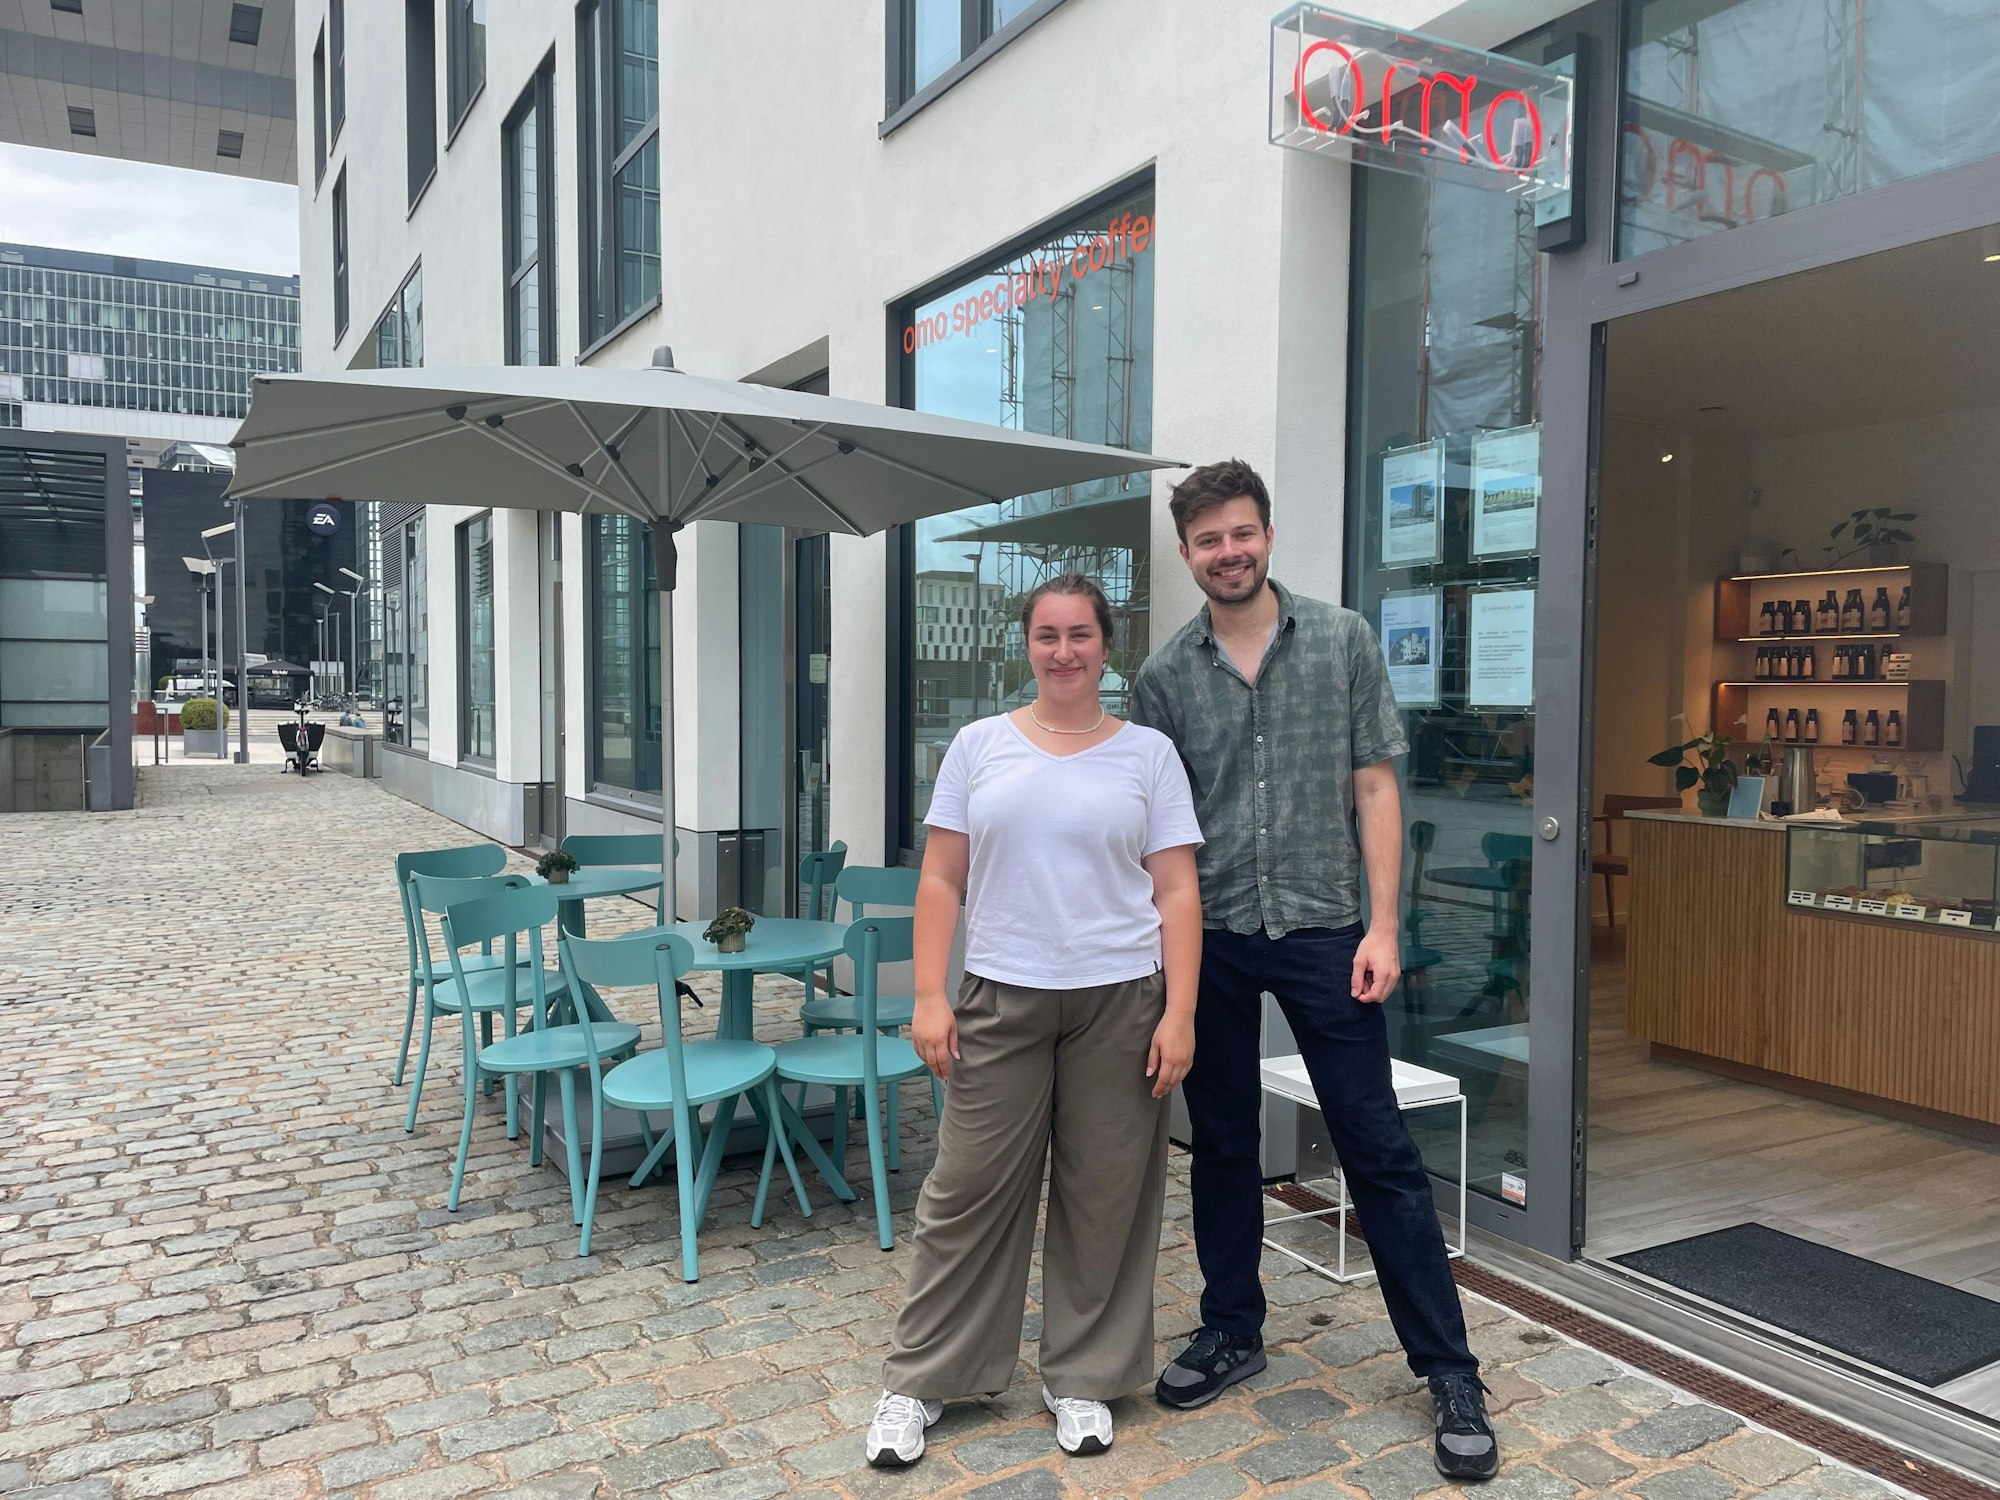 Die Besitzer Carla (l.) und Dirk (r.) vor ihrem Café „omo“ am Rheinauhafen.